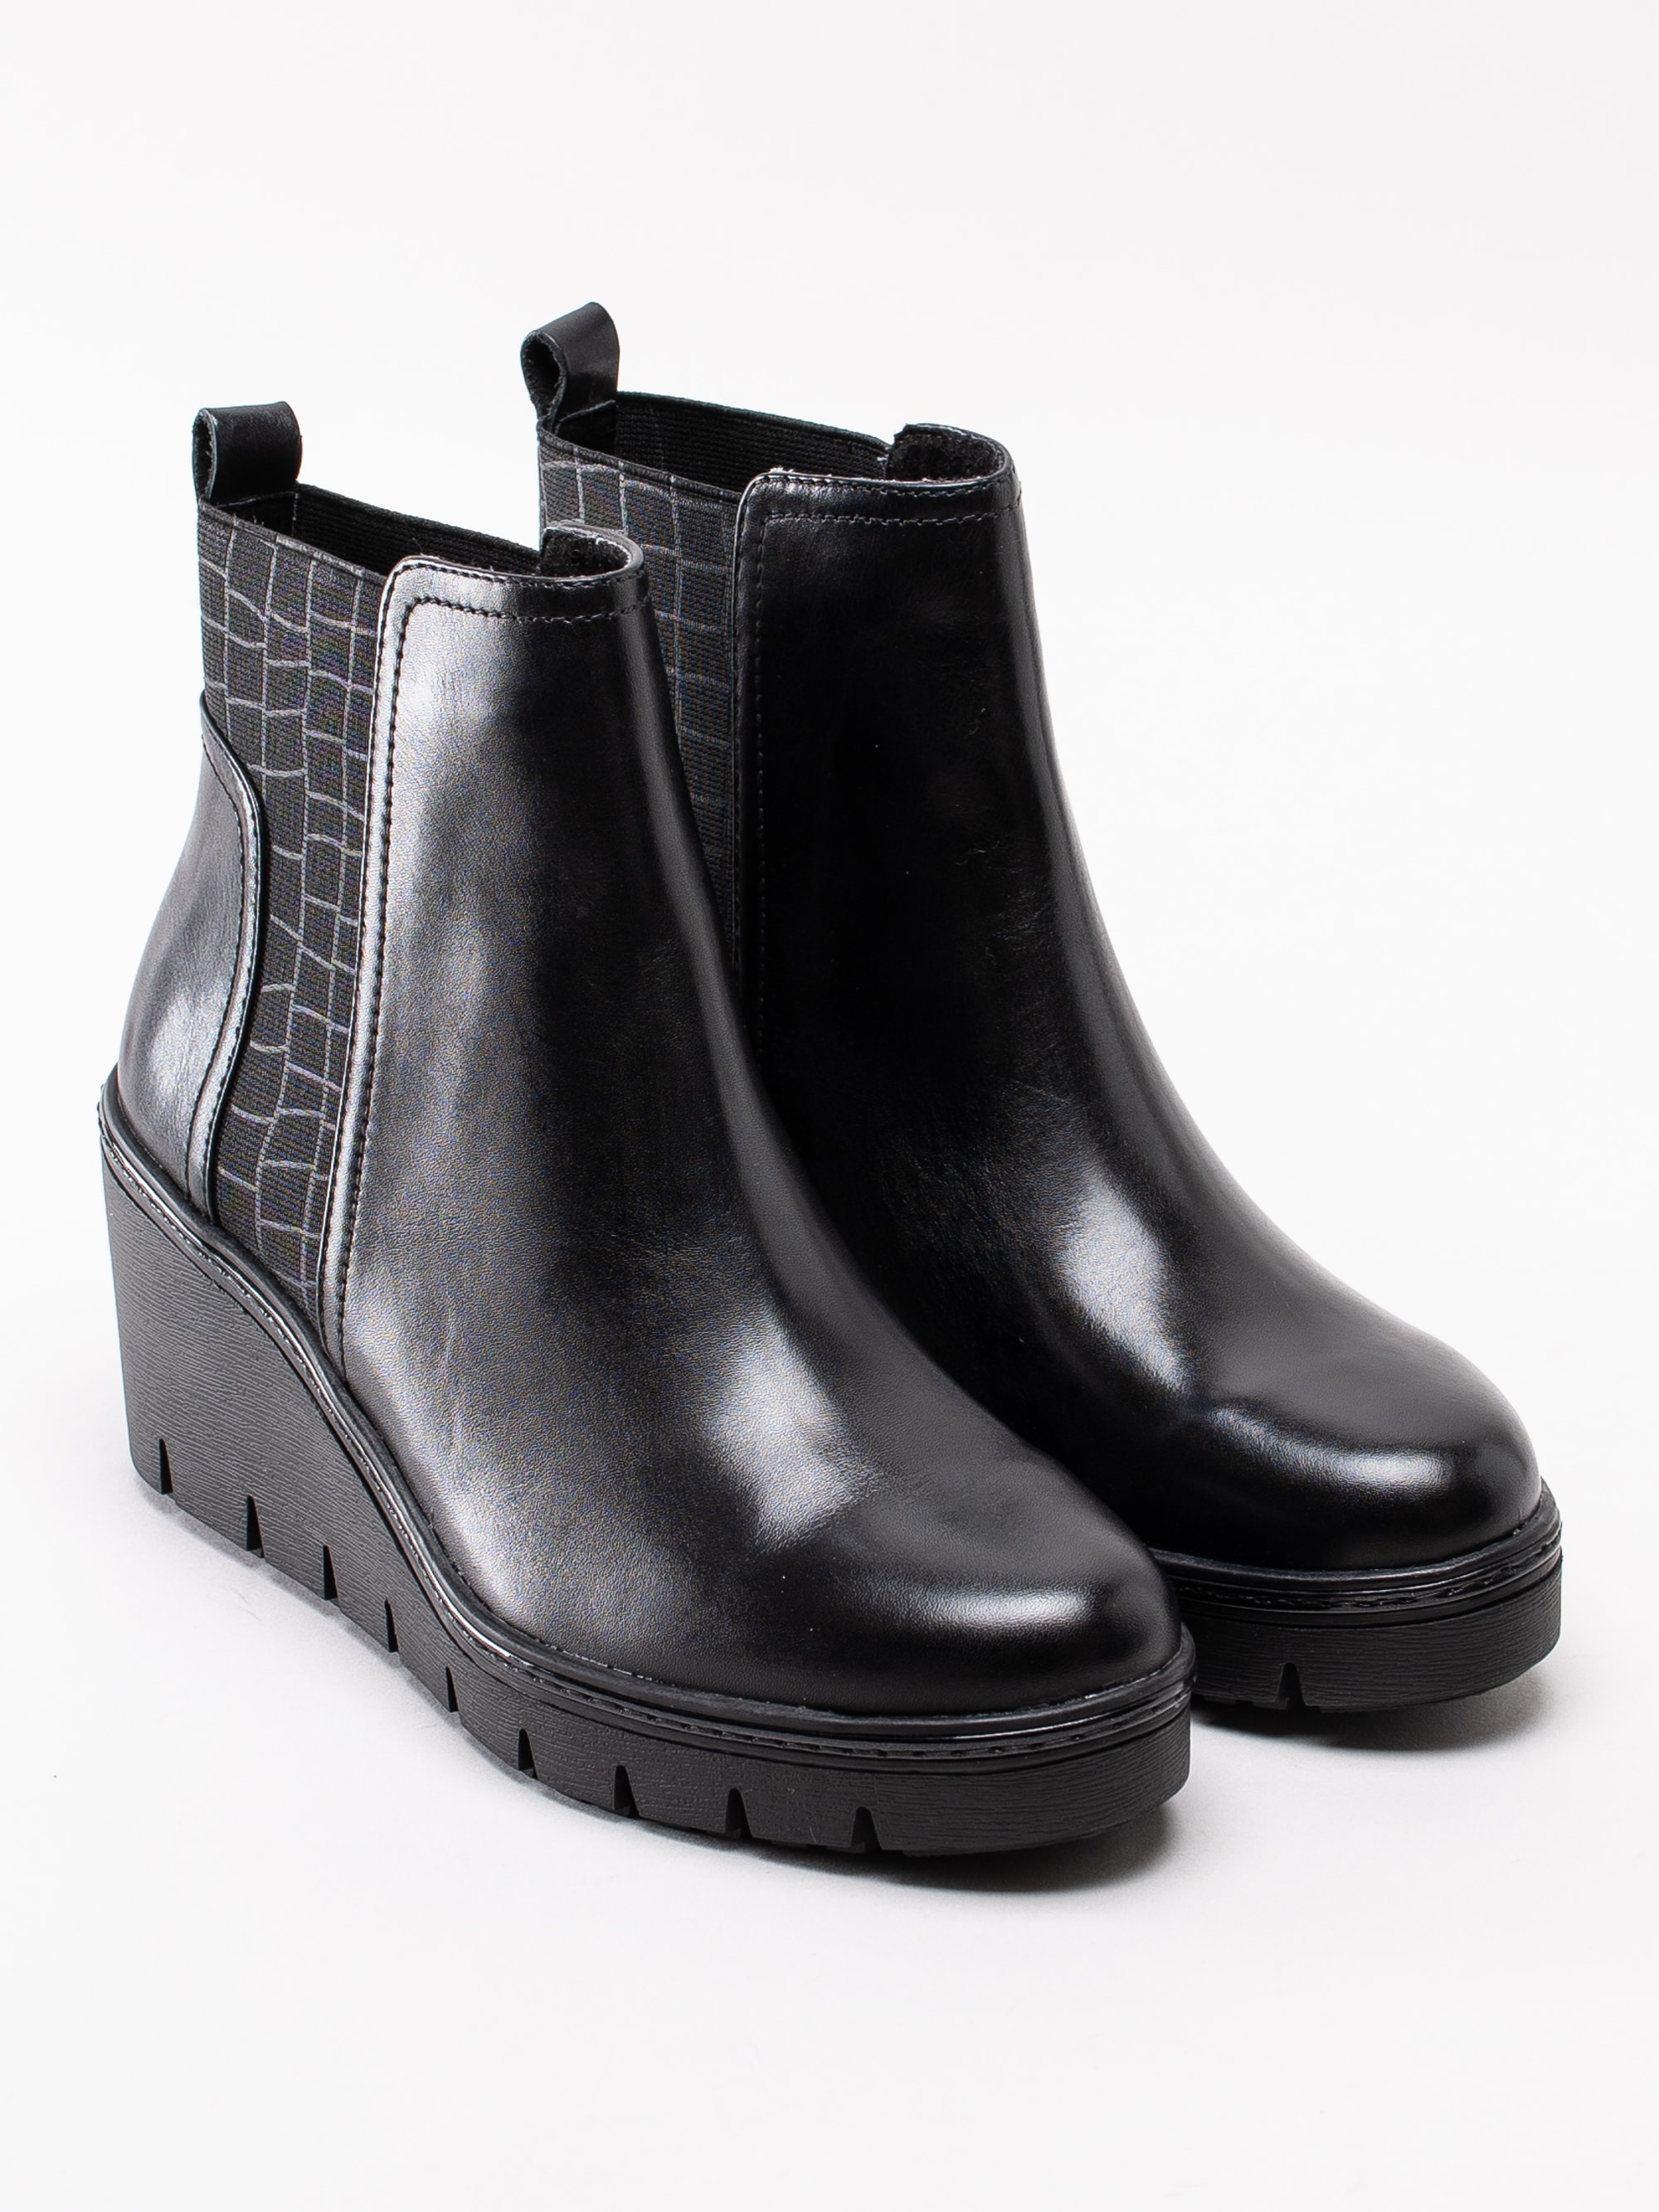 10193125 Tamaris 1-25430-23-001 svarta kilklackade platå boots med mönstrad resår-3